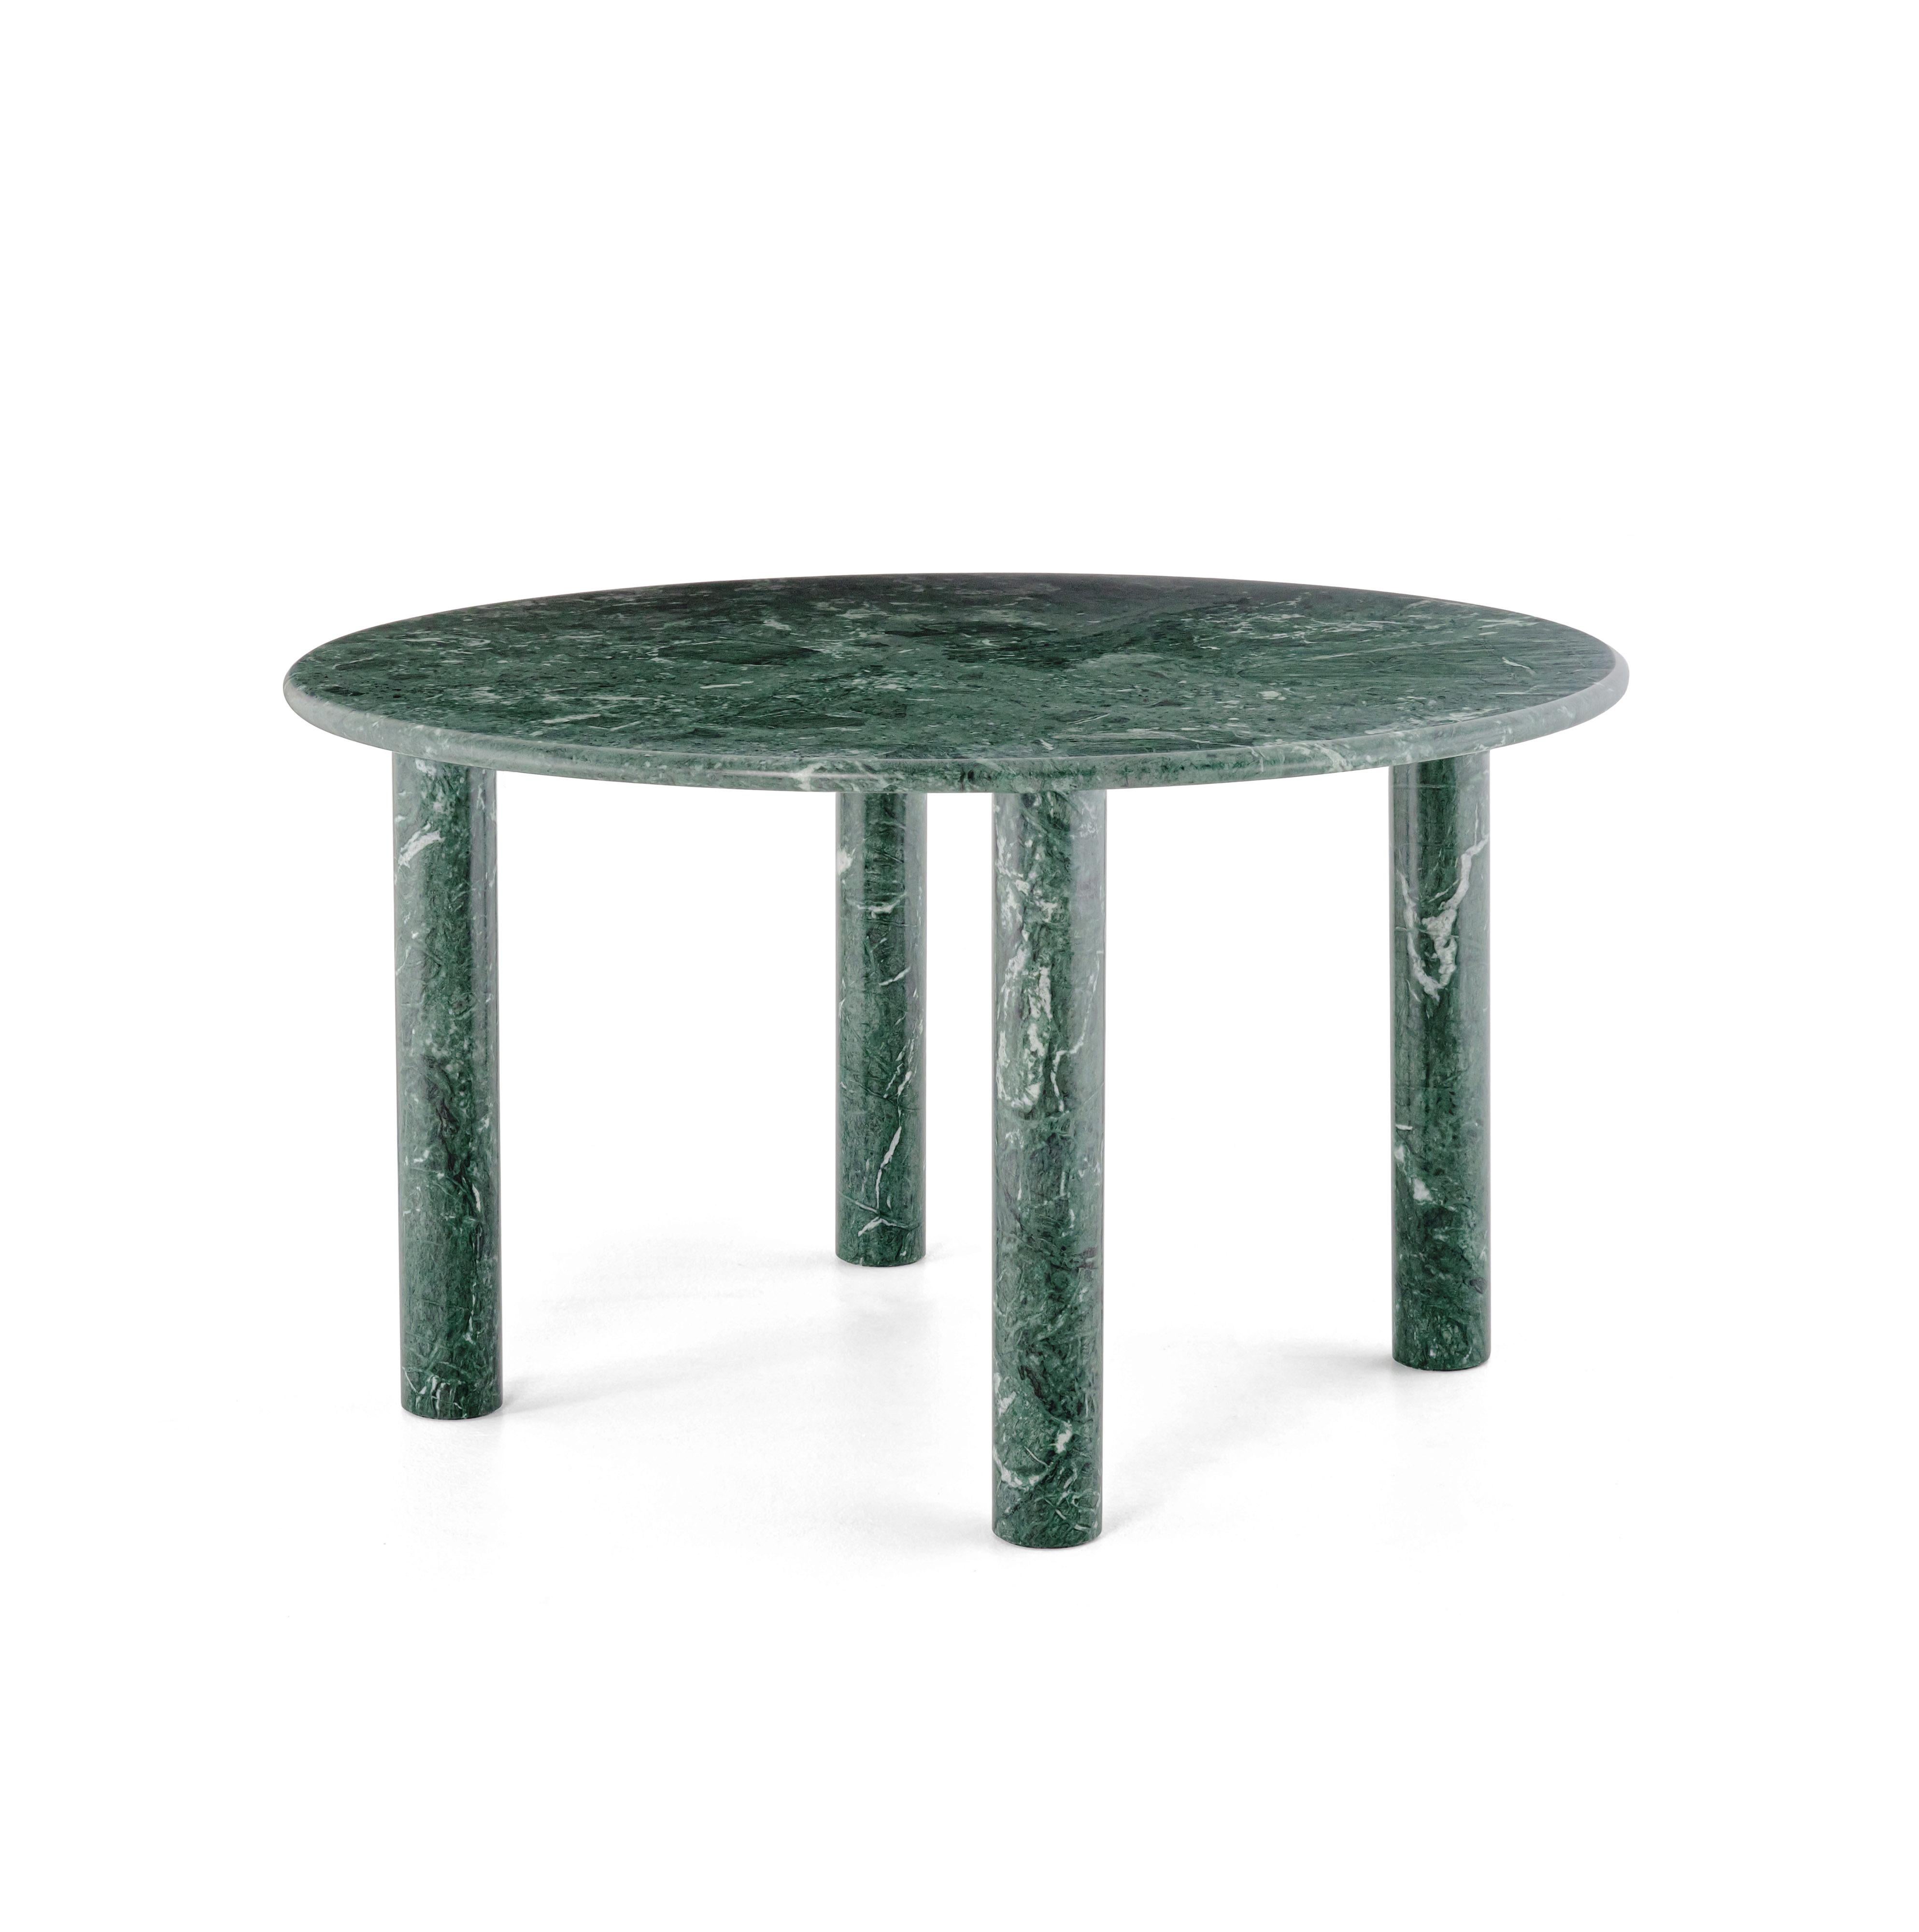 Table ronde de salle à manger 'PAUL' par NOOM
Designer : Kateryna Sokolova


Modèle présenté dans l'image : green marble - verde ocean
Dimensions : H 71 cm, Ø 130 cm

Le design de la table est un 